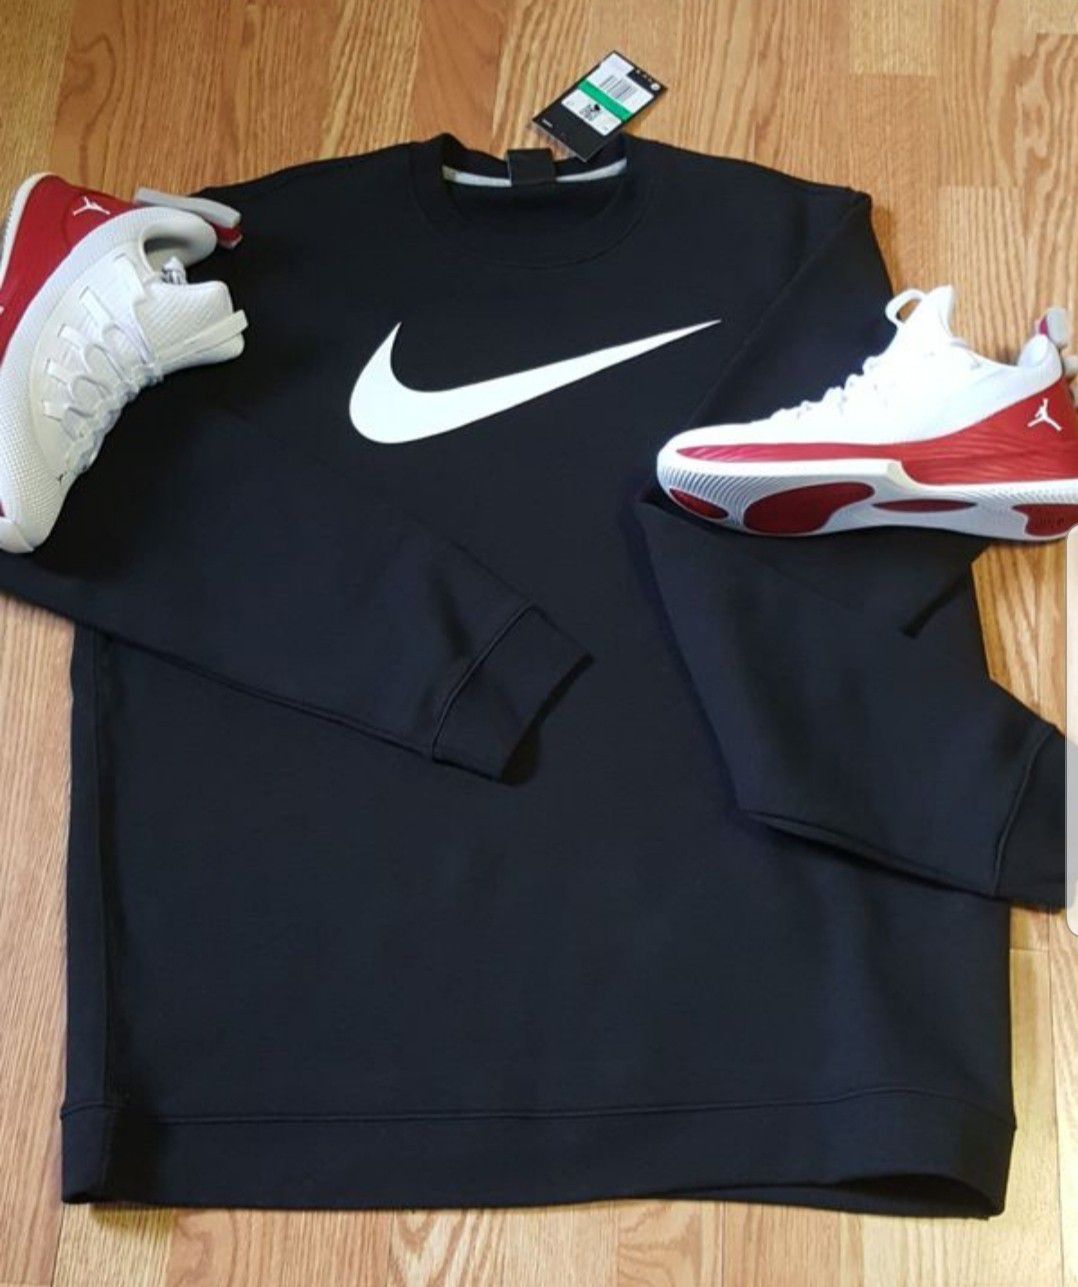 Nike sweatshirt black men's size M,L,XL.